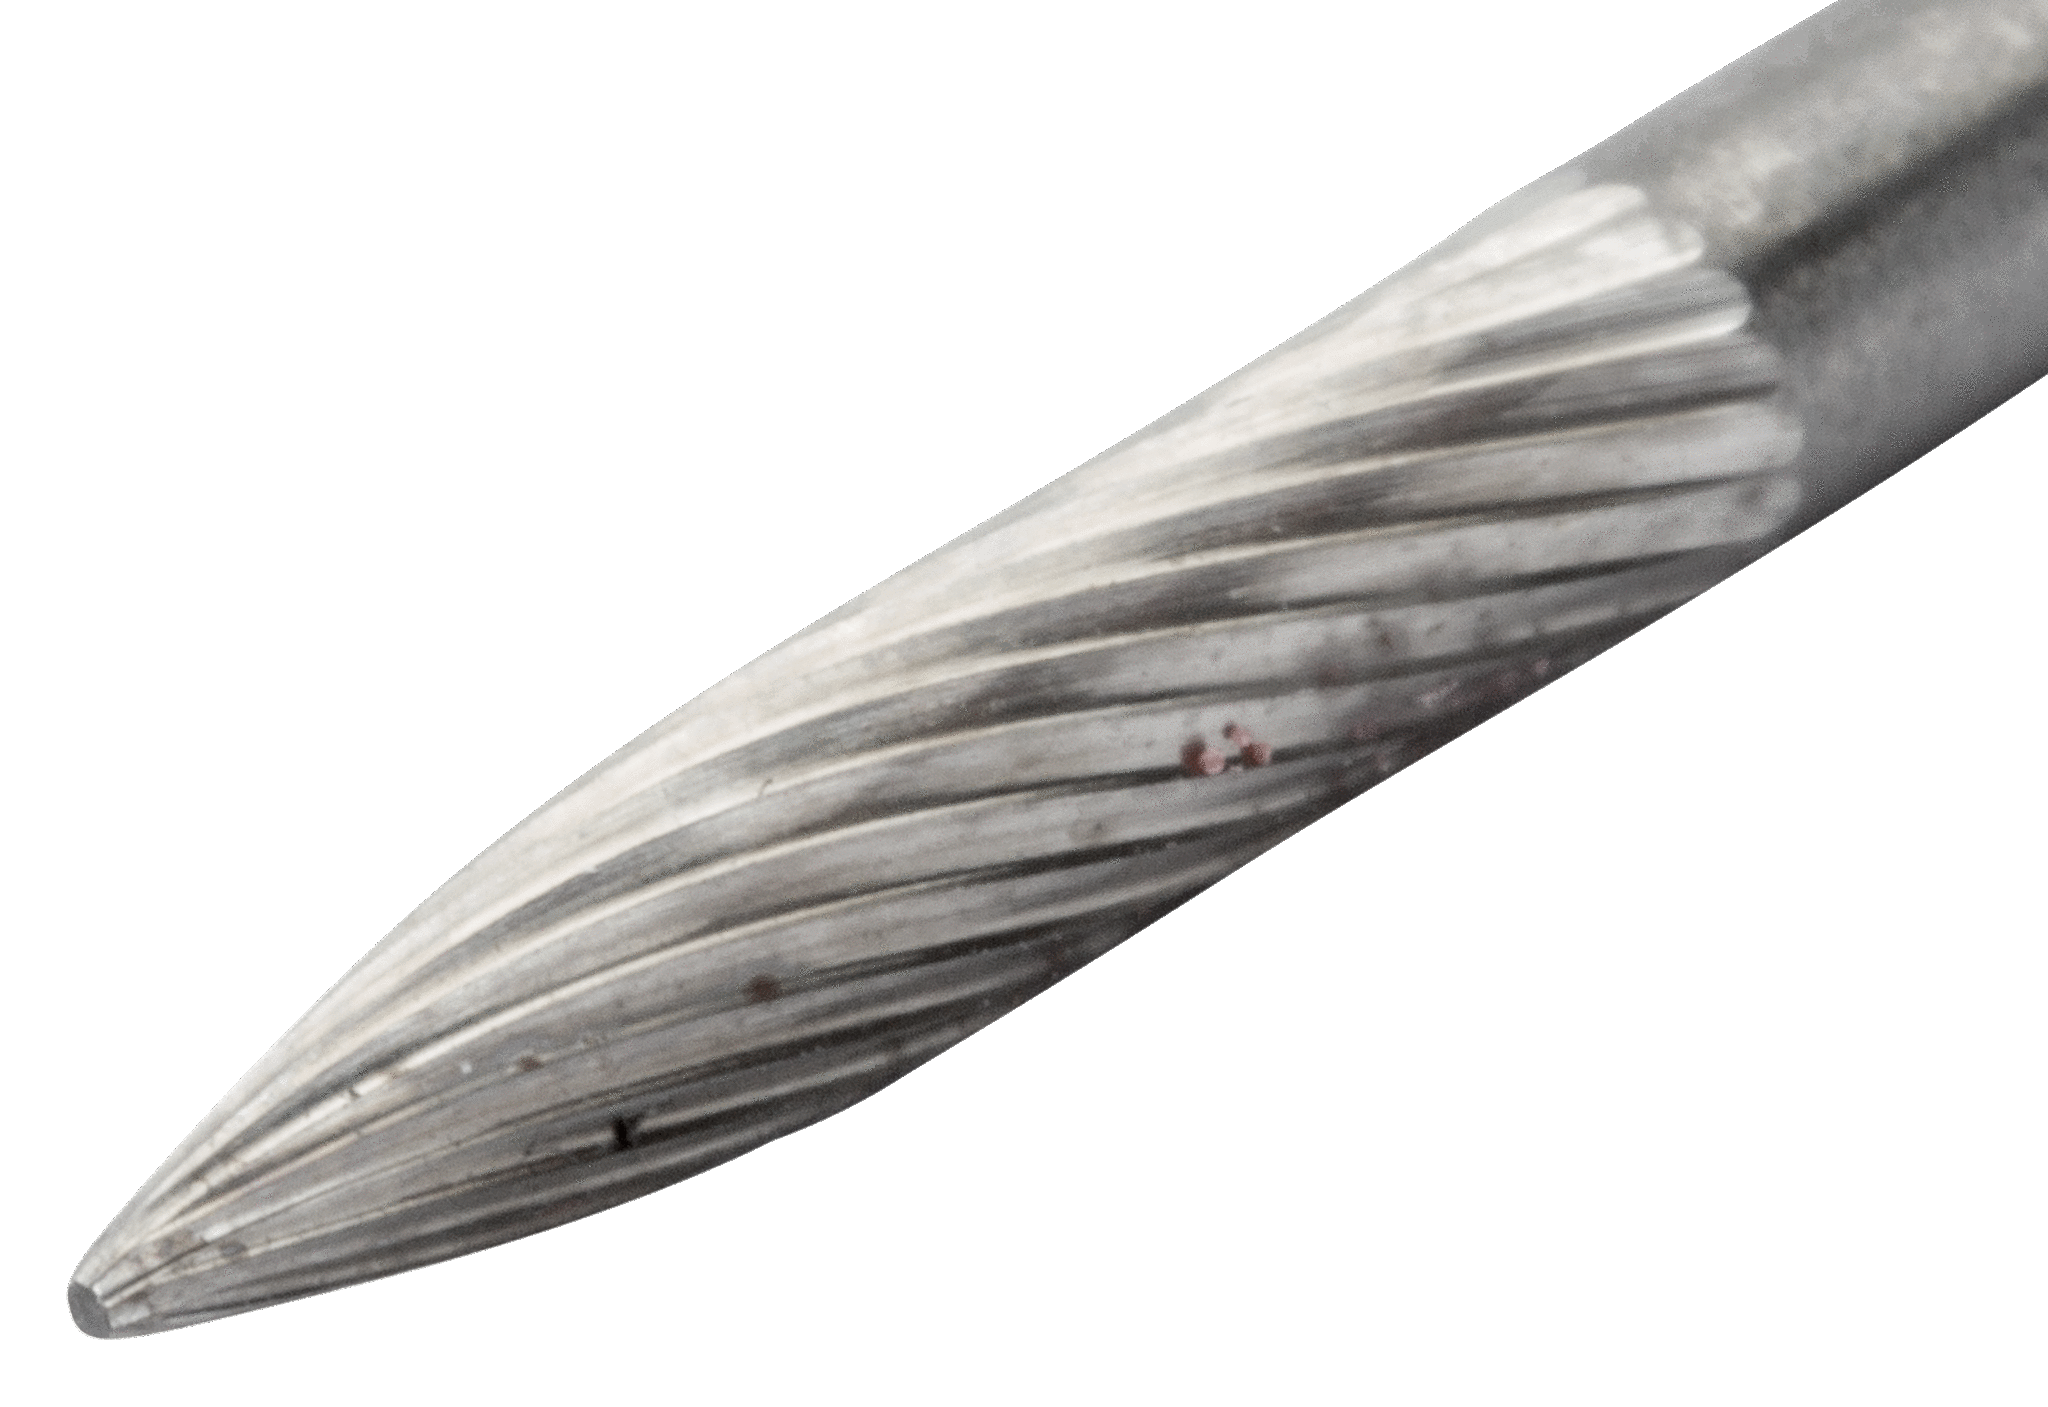 картинка Твердосплавные борфрезы с иглообразной головкой для ремонта шин BAHCO A0320M03X от магазина "Элит-инструмент"